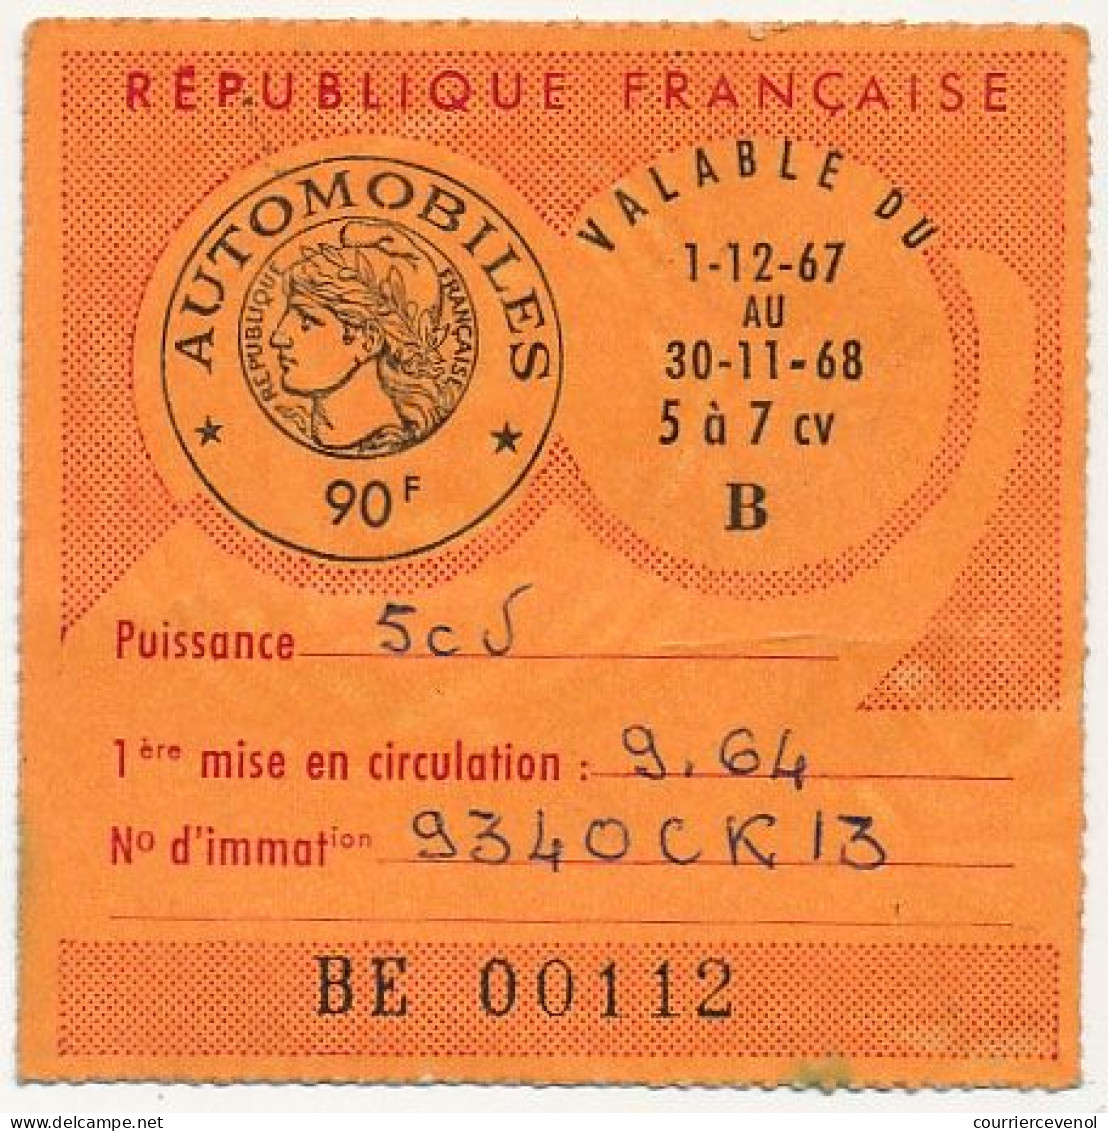 FRANCE - Vignette Automobile 1967/68 - 5 à 7 Cv - 90F - Marseille - Lettres & Documents